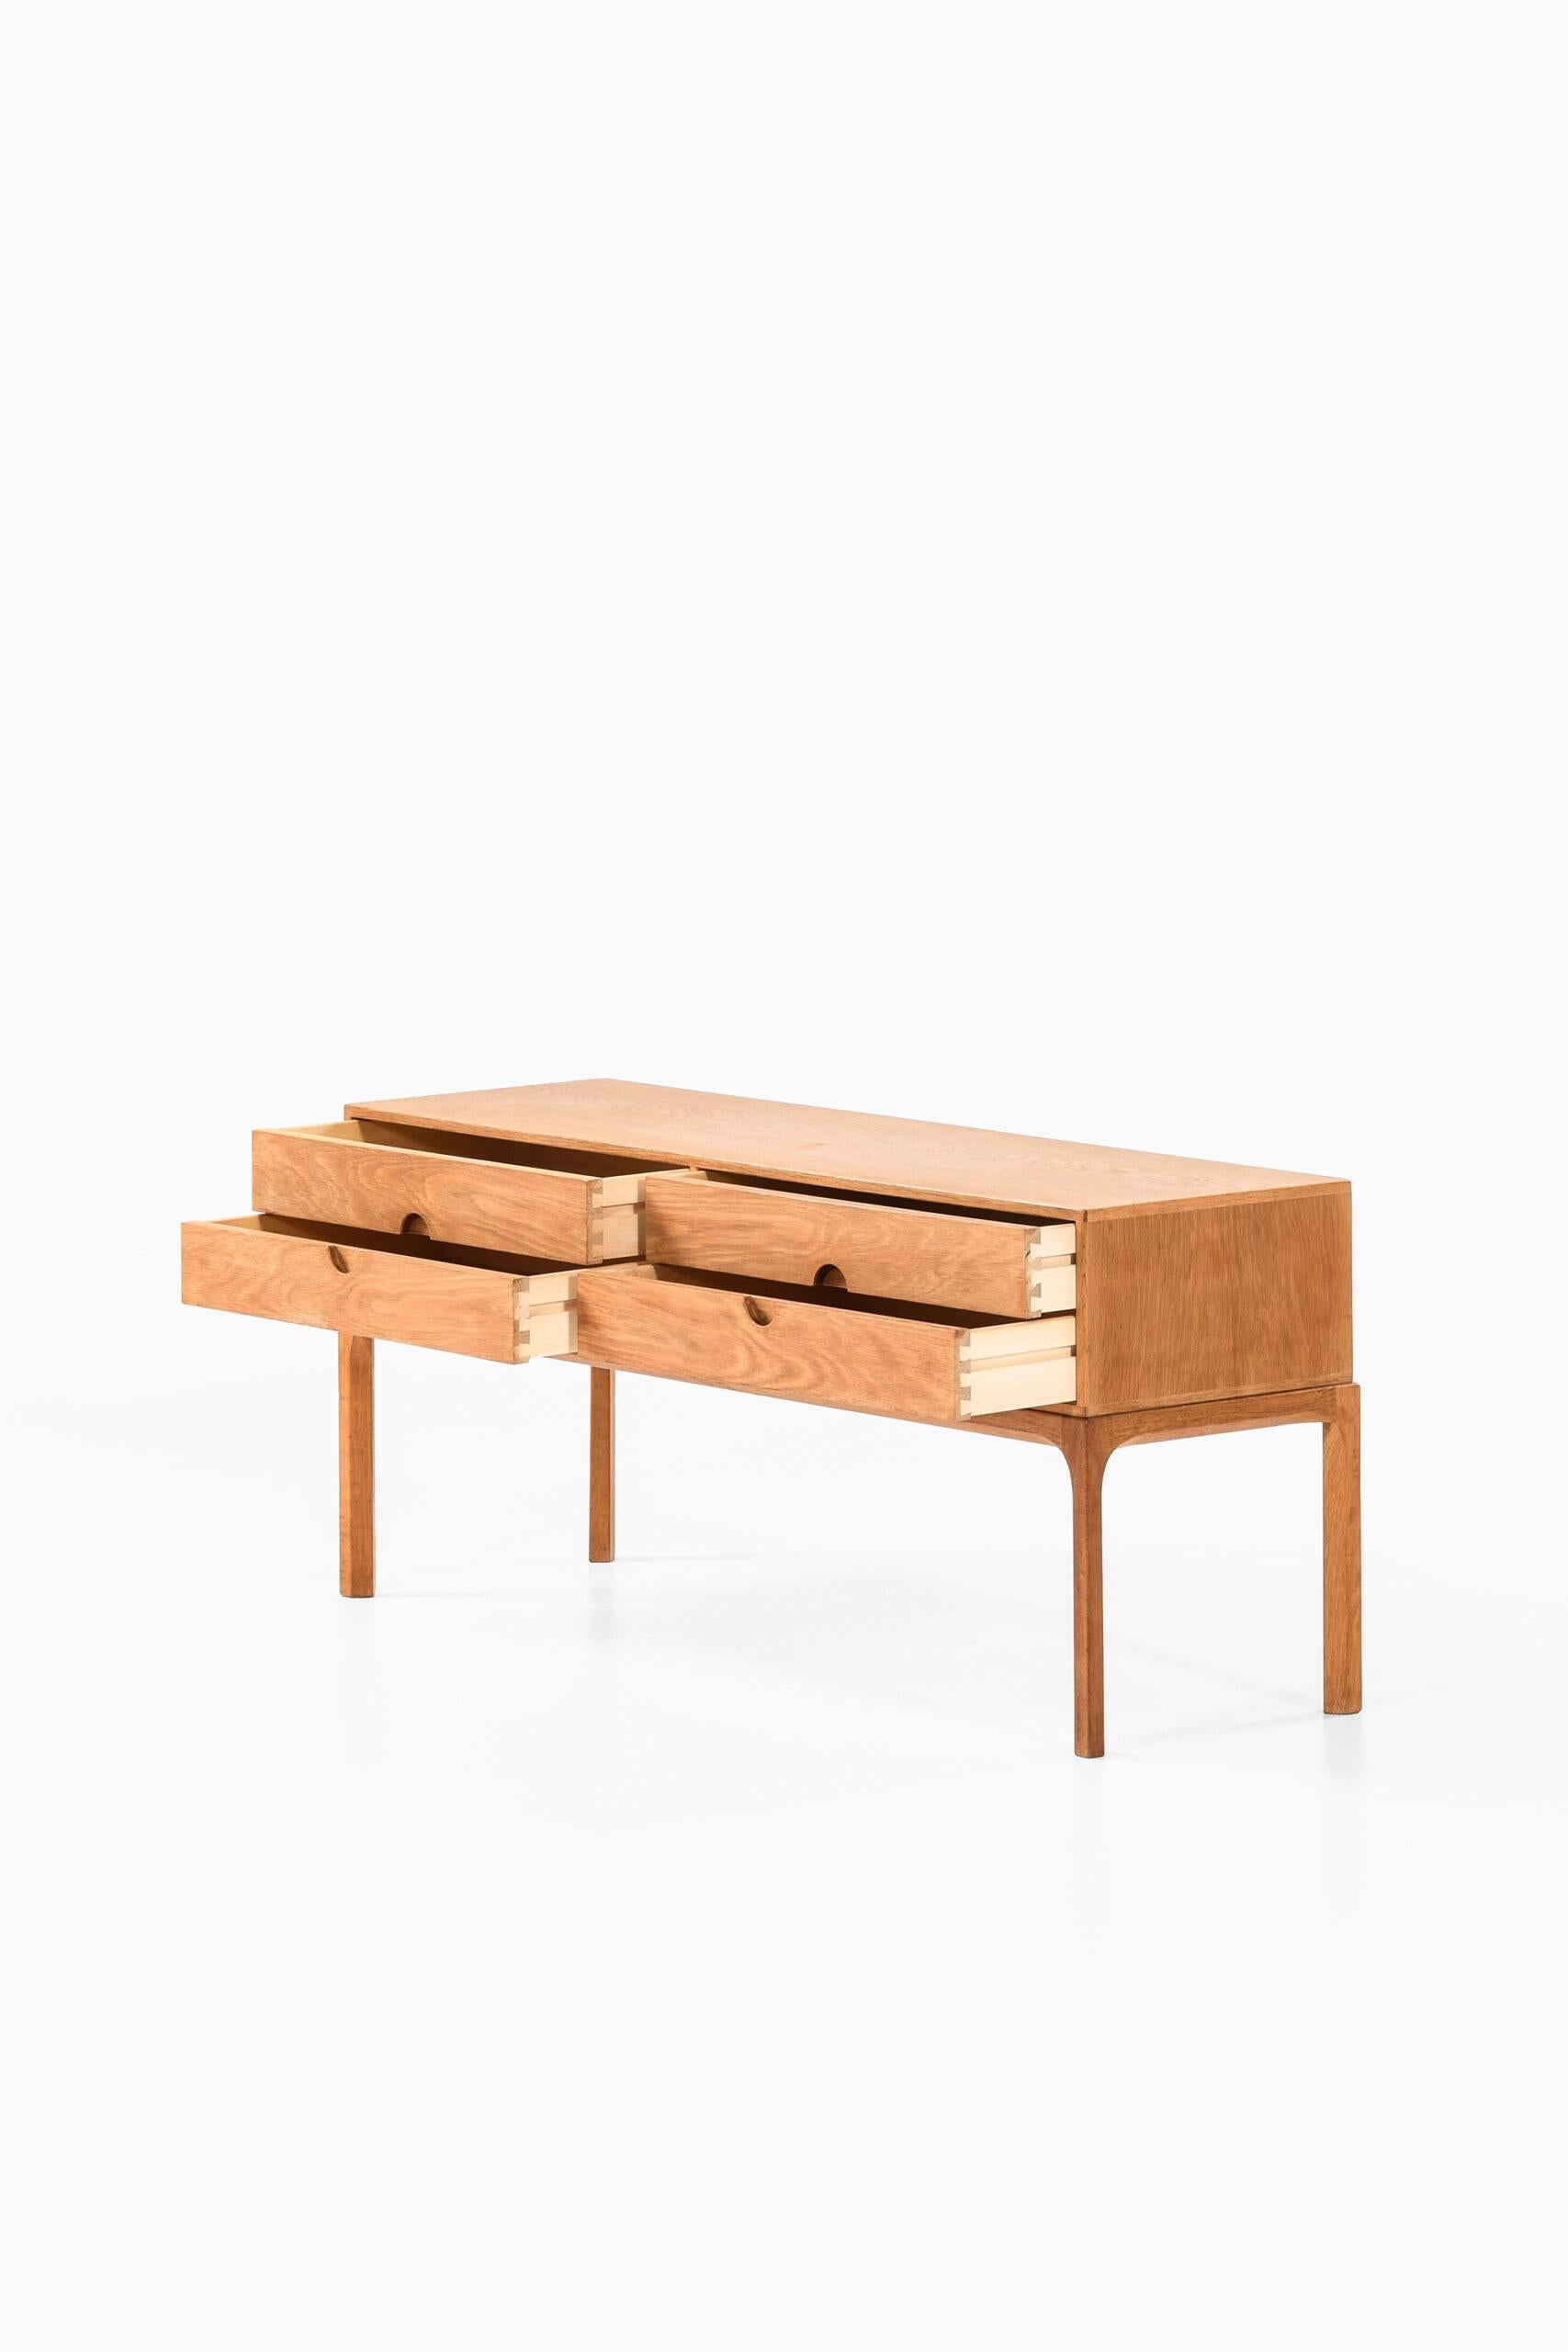 Kai Kristiansen Bureau / Side Table Model 394 by Aksel Kjersgaard in Denmark In Good Condition For Sale In Limhamn, Skåne län